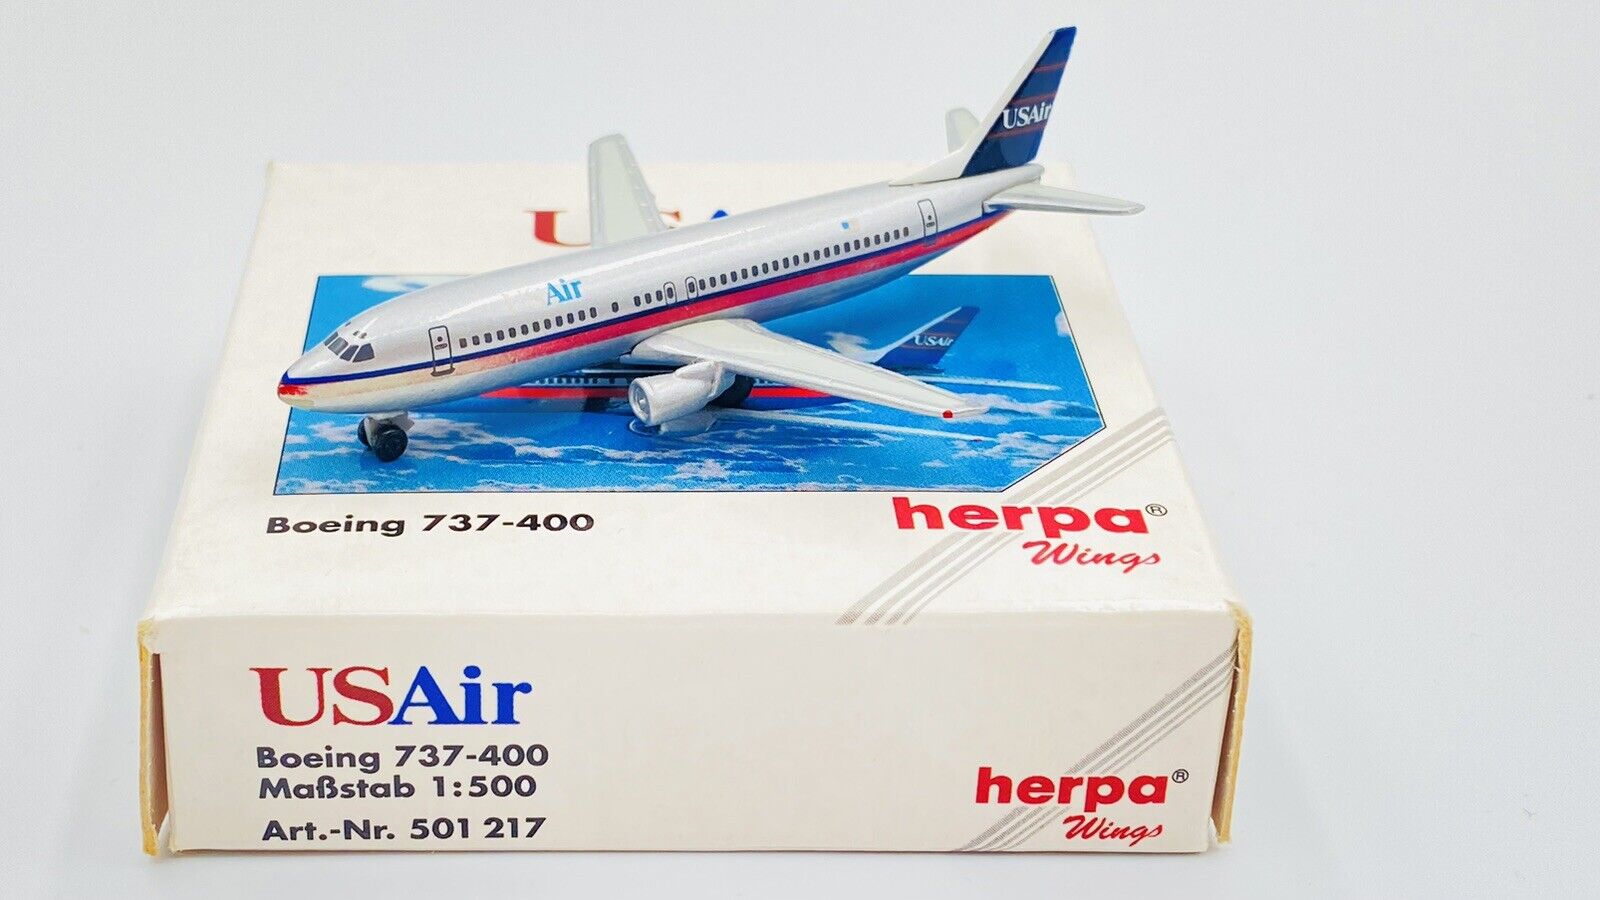 HERPA WINGS (501217) 1:500 USAIR BOEING 737-400 BOXED 